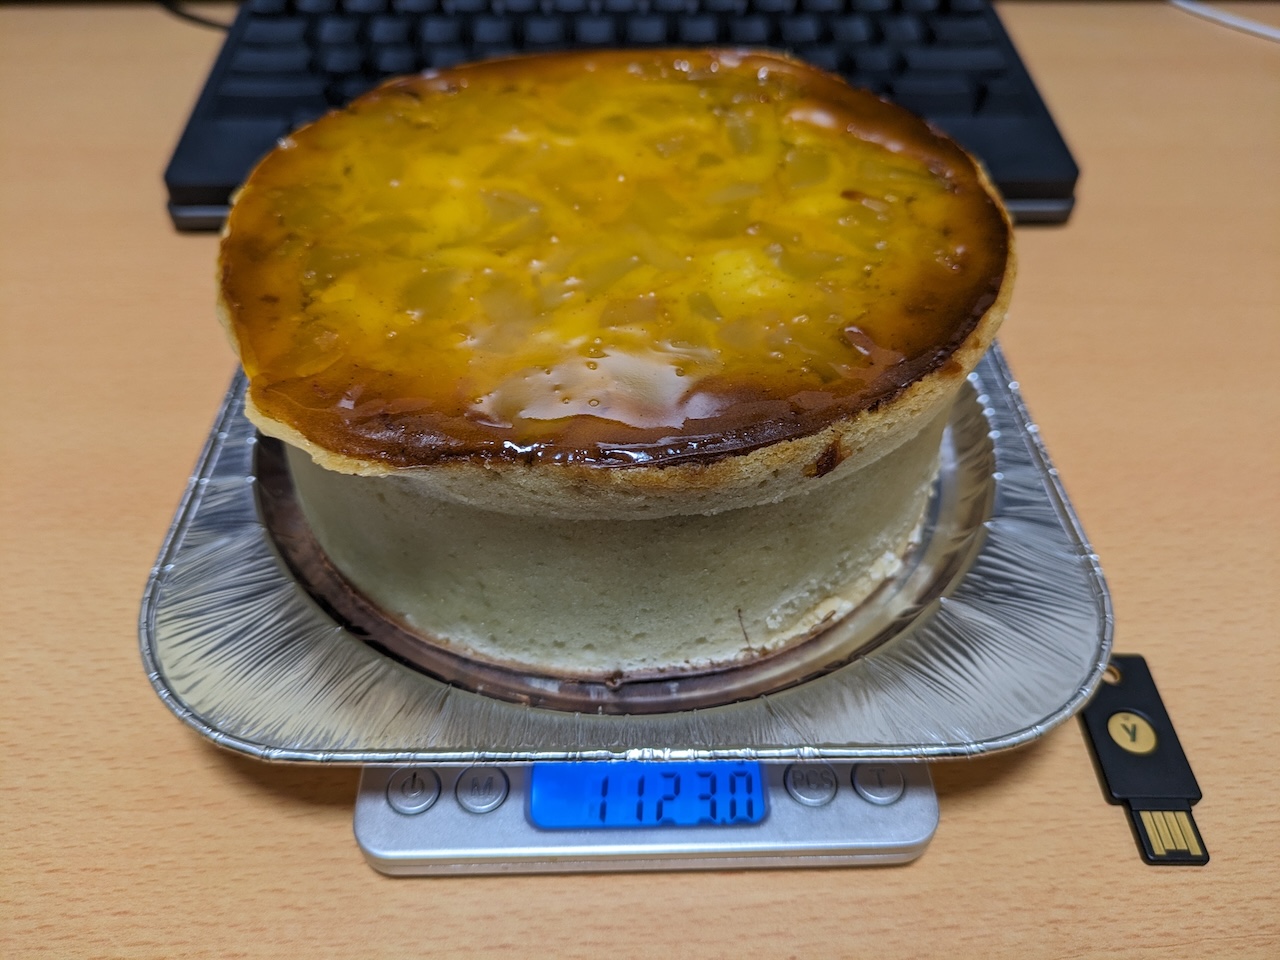 料理用スケールに載せたケーキの画像。1123.0gを表示している